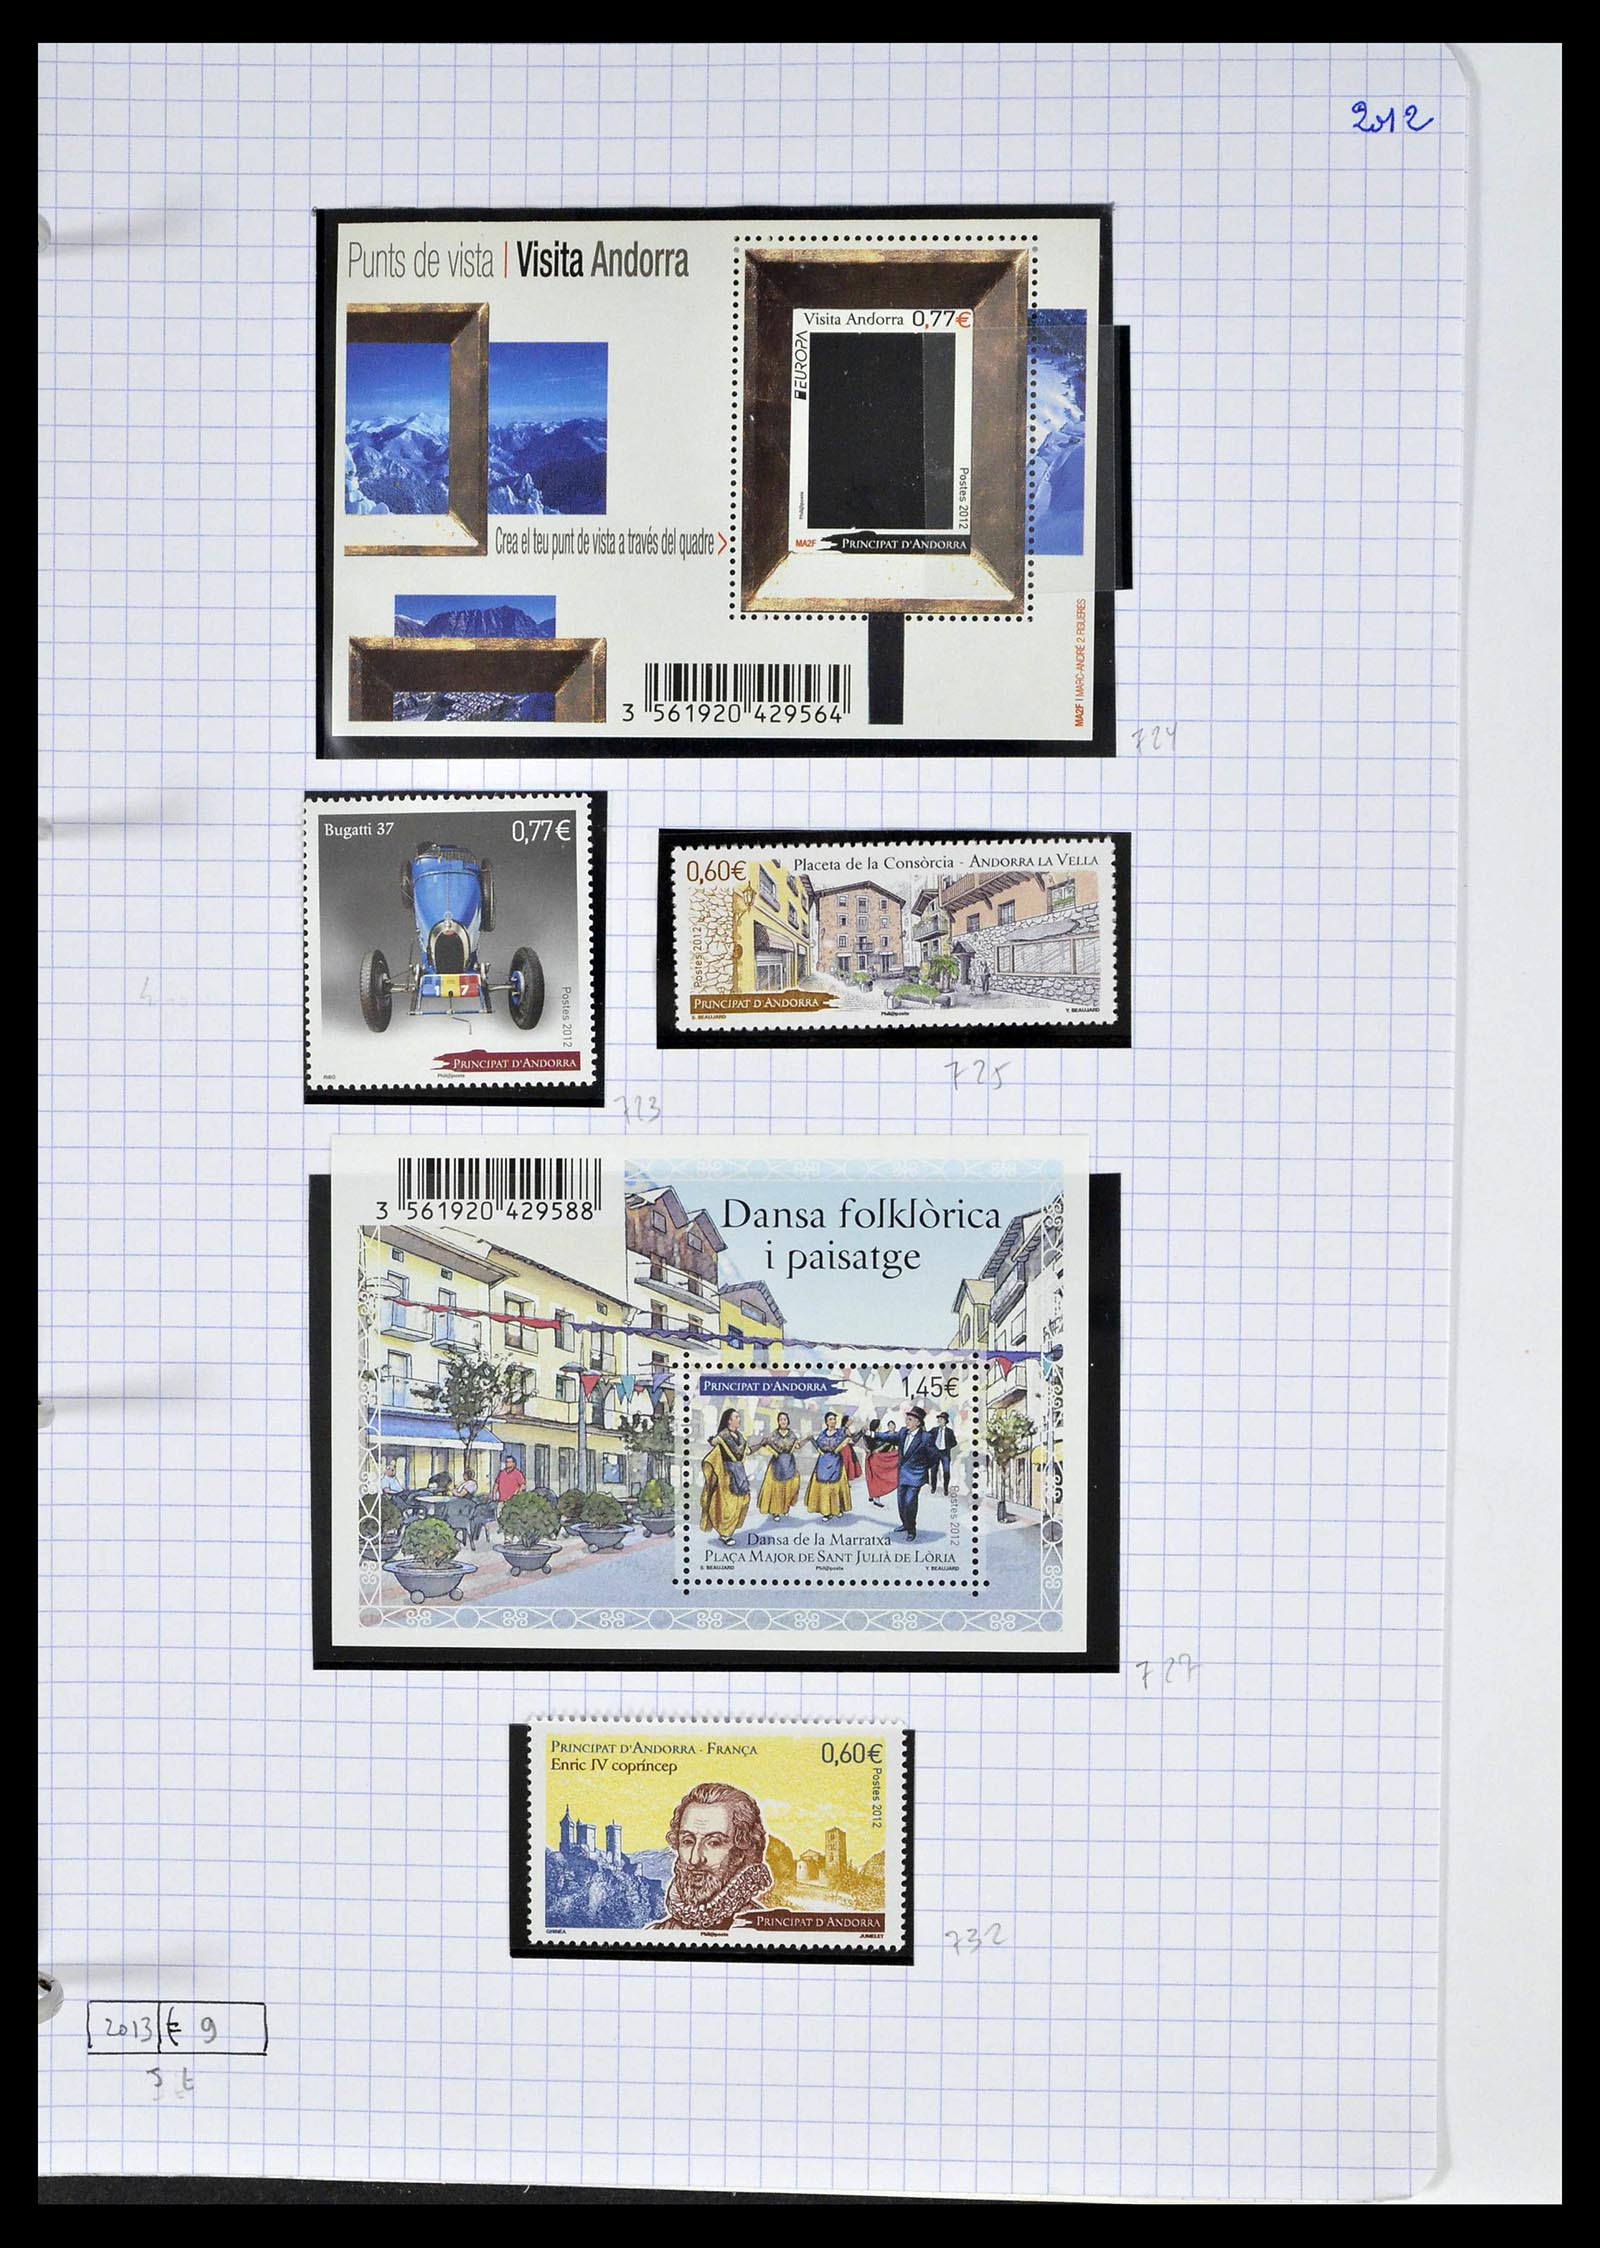 39232 0069 - Postzegelverzameling 39232 Frans Andorra 1931-2013.